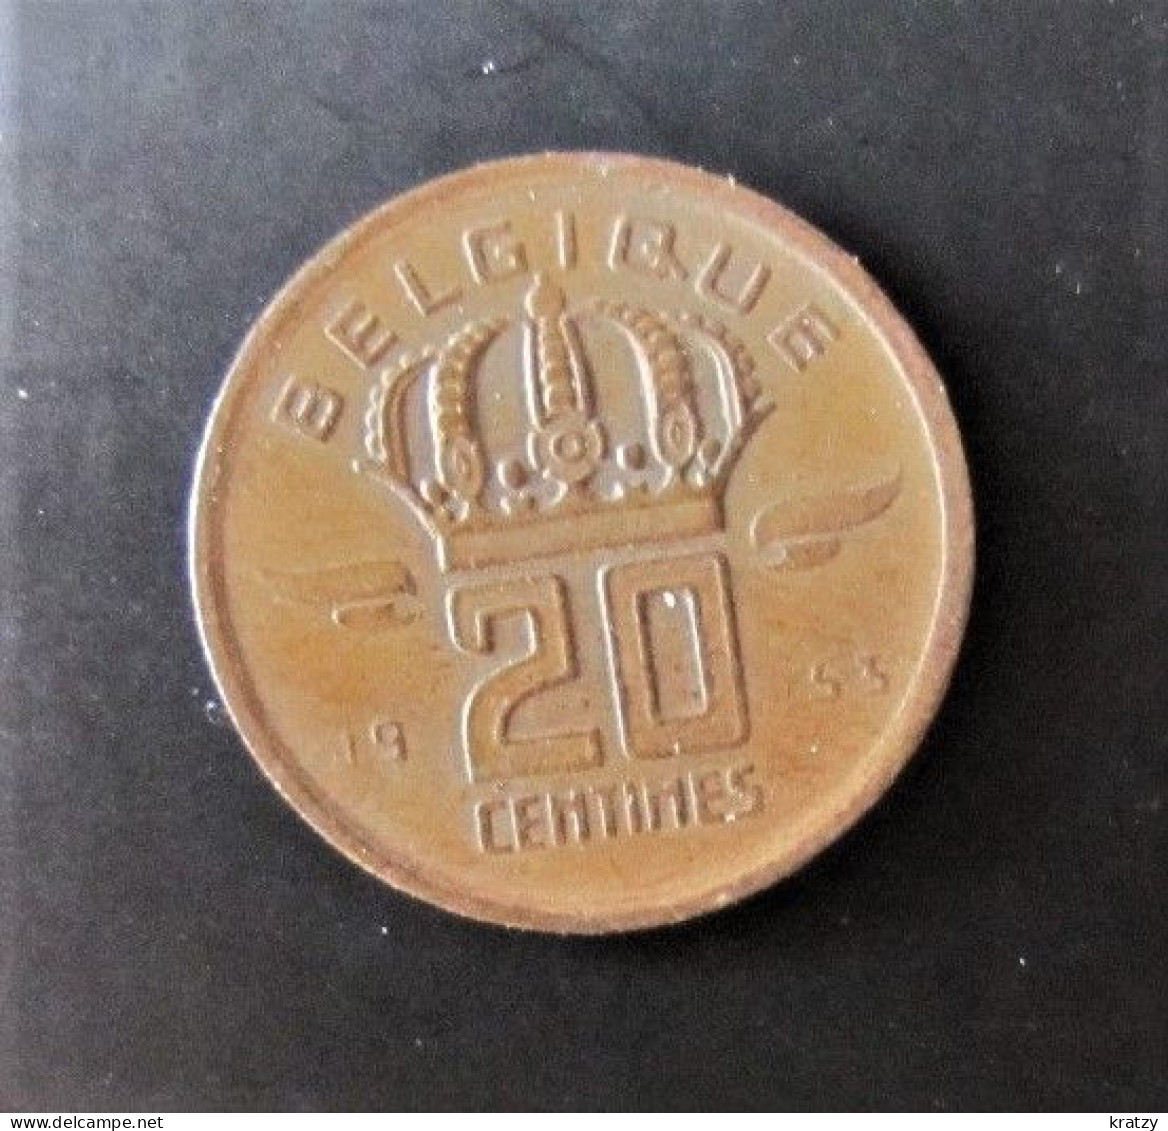 BELGIQUE - Pièce De 20 Centimes - Cuivre - 1954 - 20 Cents